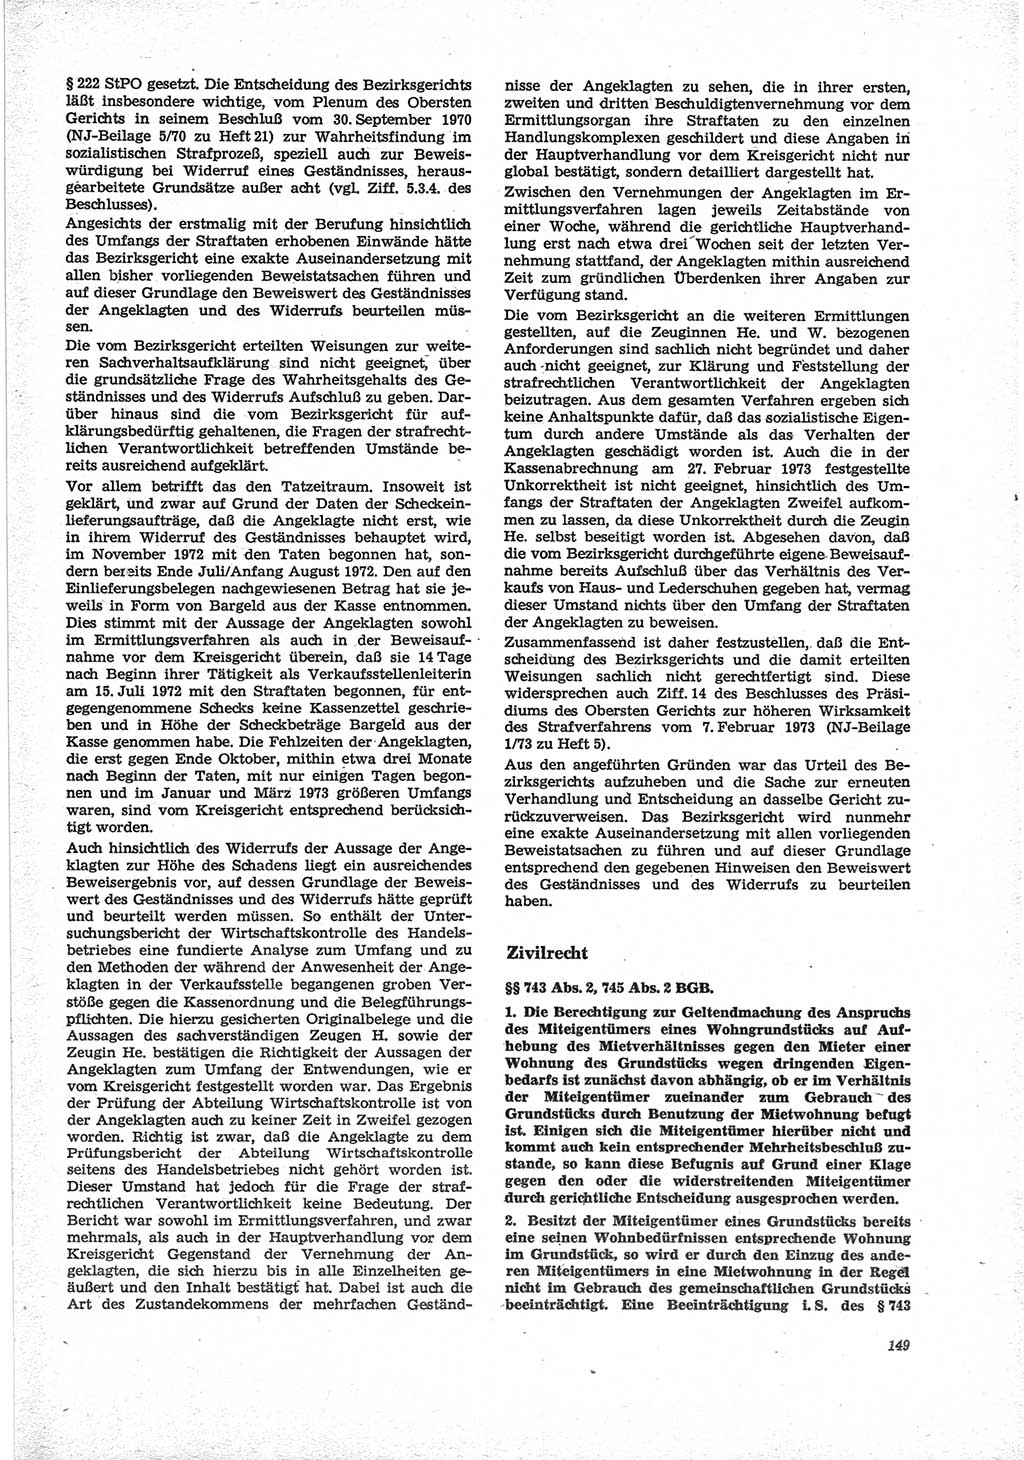 Neue Justiz (NJ), Zeitschrift für Recht und Rechtswissenschaft [Deutsche Demokratische Republik (DDR)], 28. Jahrgang 1974, Seite 149 (NJ DDR 1974, S. 149)